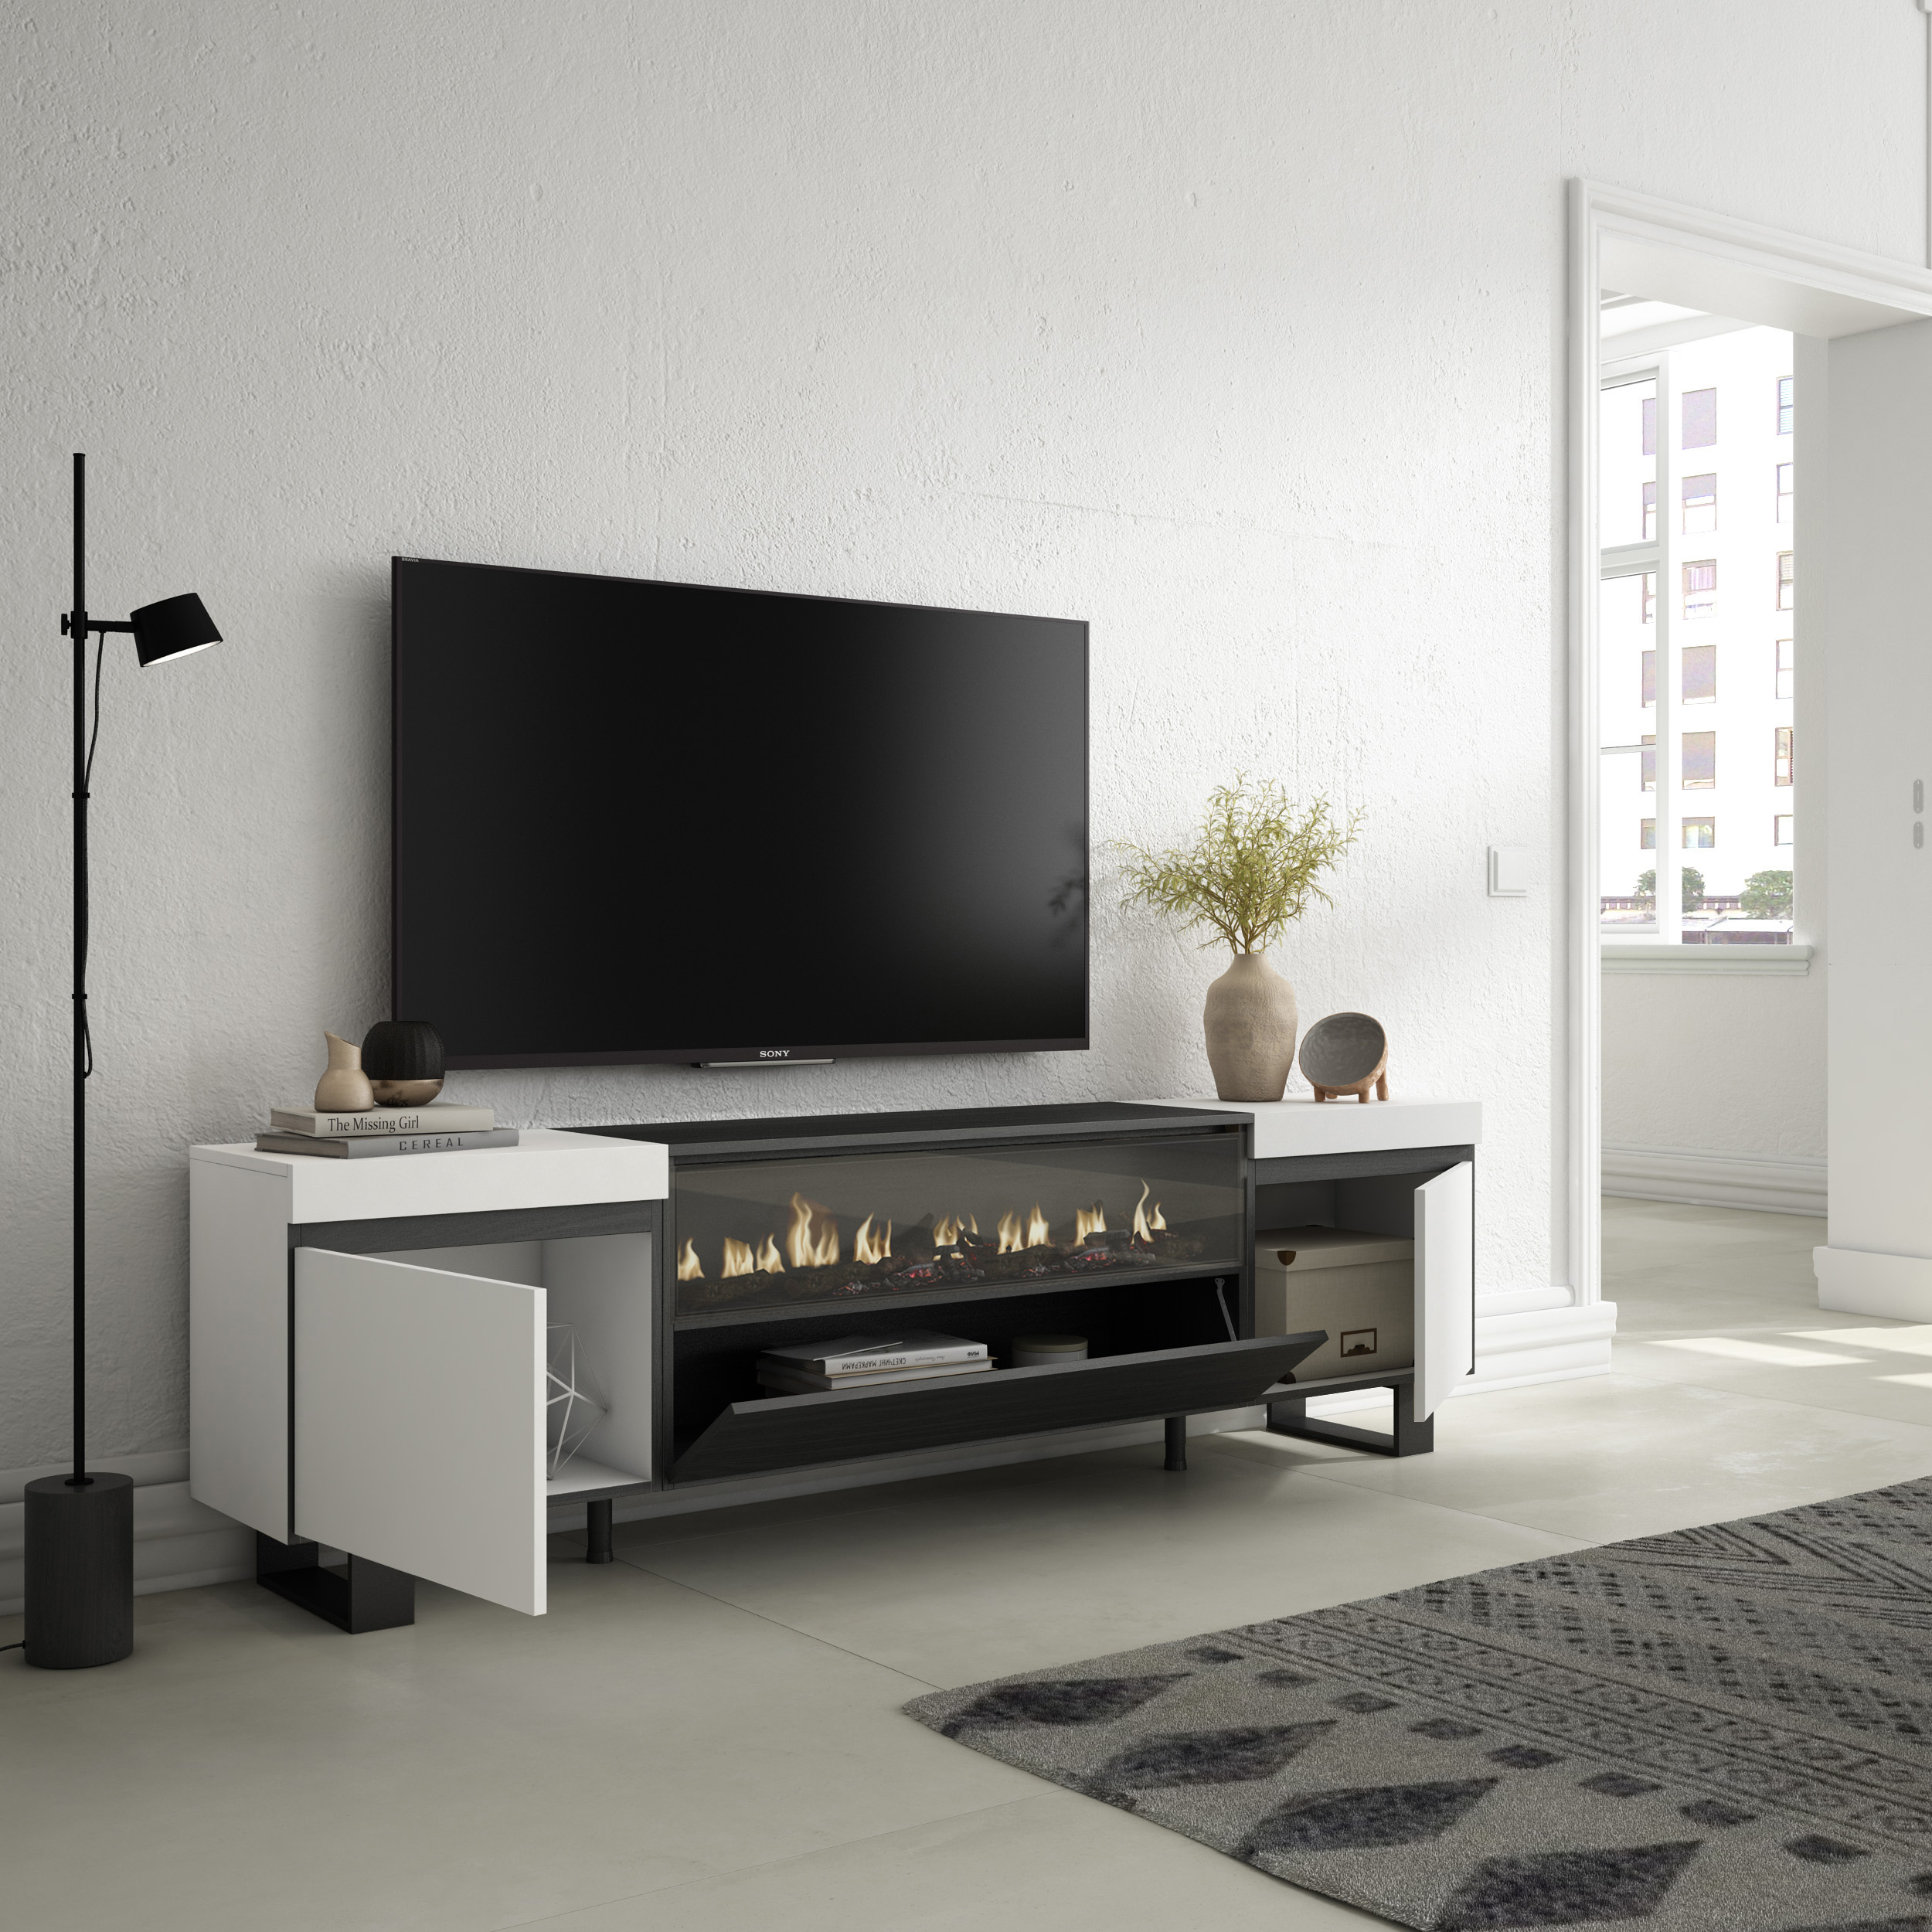 Mueble TV Televisión, Chimenea eléctrica, Diseño industrial